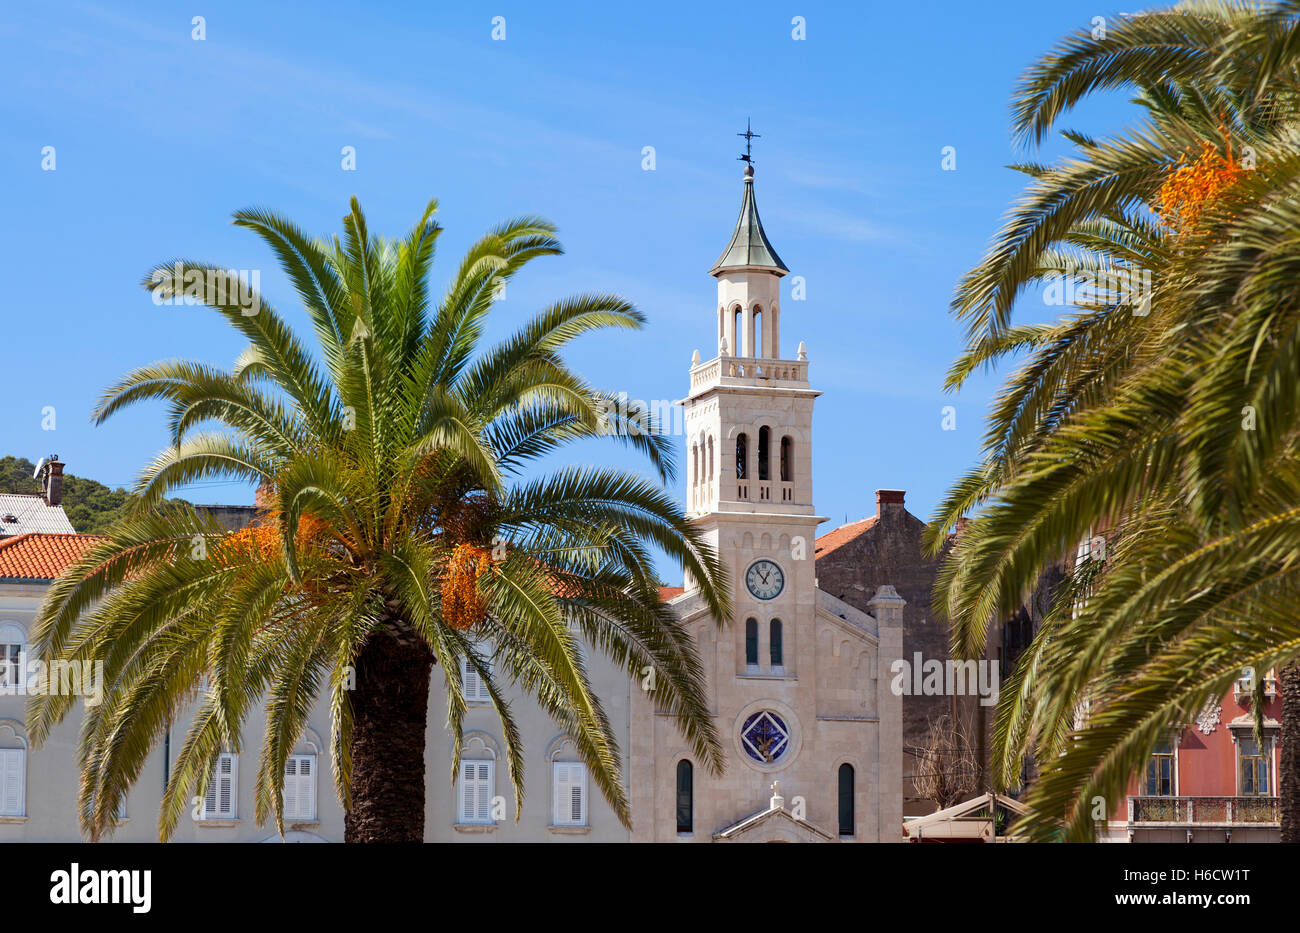 Kirche und Franziskanerkloster des Hl. Franziskus, Split, Kroatien. Phoenix Dactylifera, Dattelpalmen im Vordergrund. Stockfoto